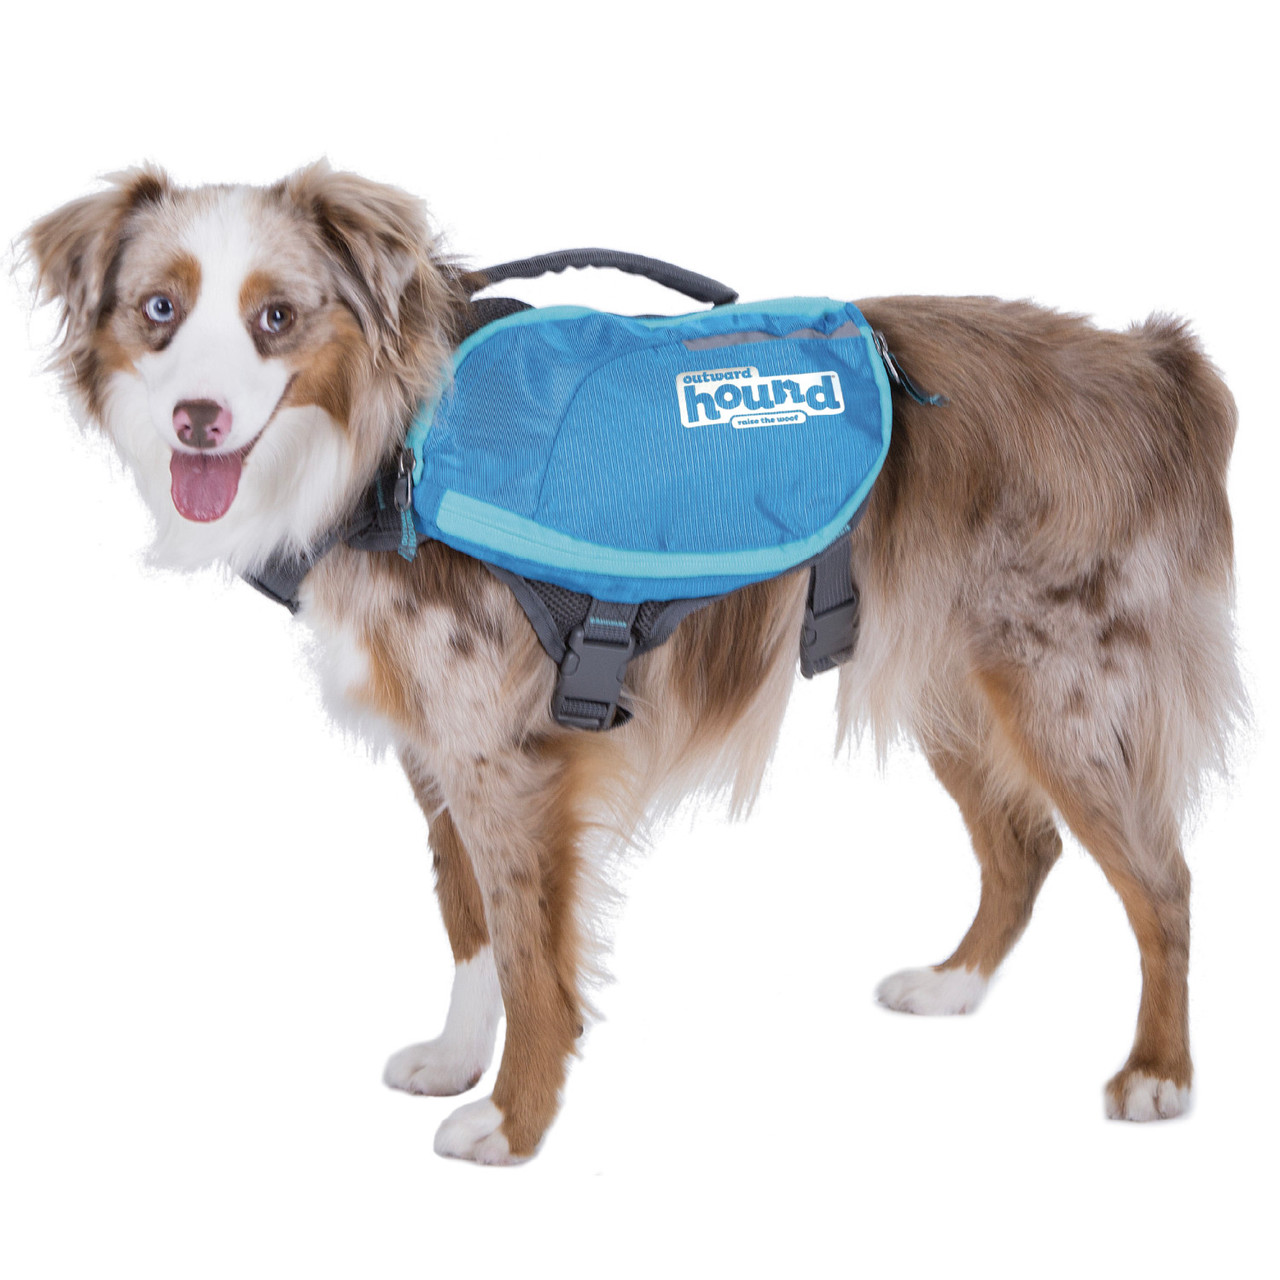 Product image for DayPak Saddleback Dog Backpack